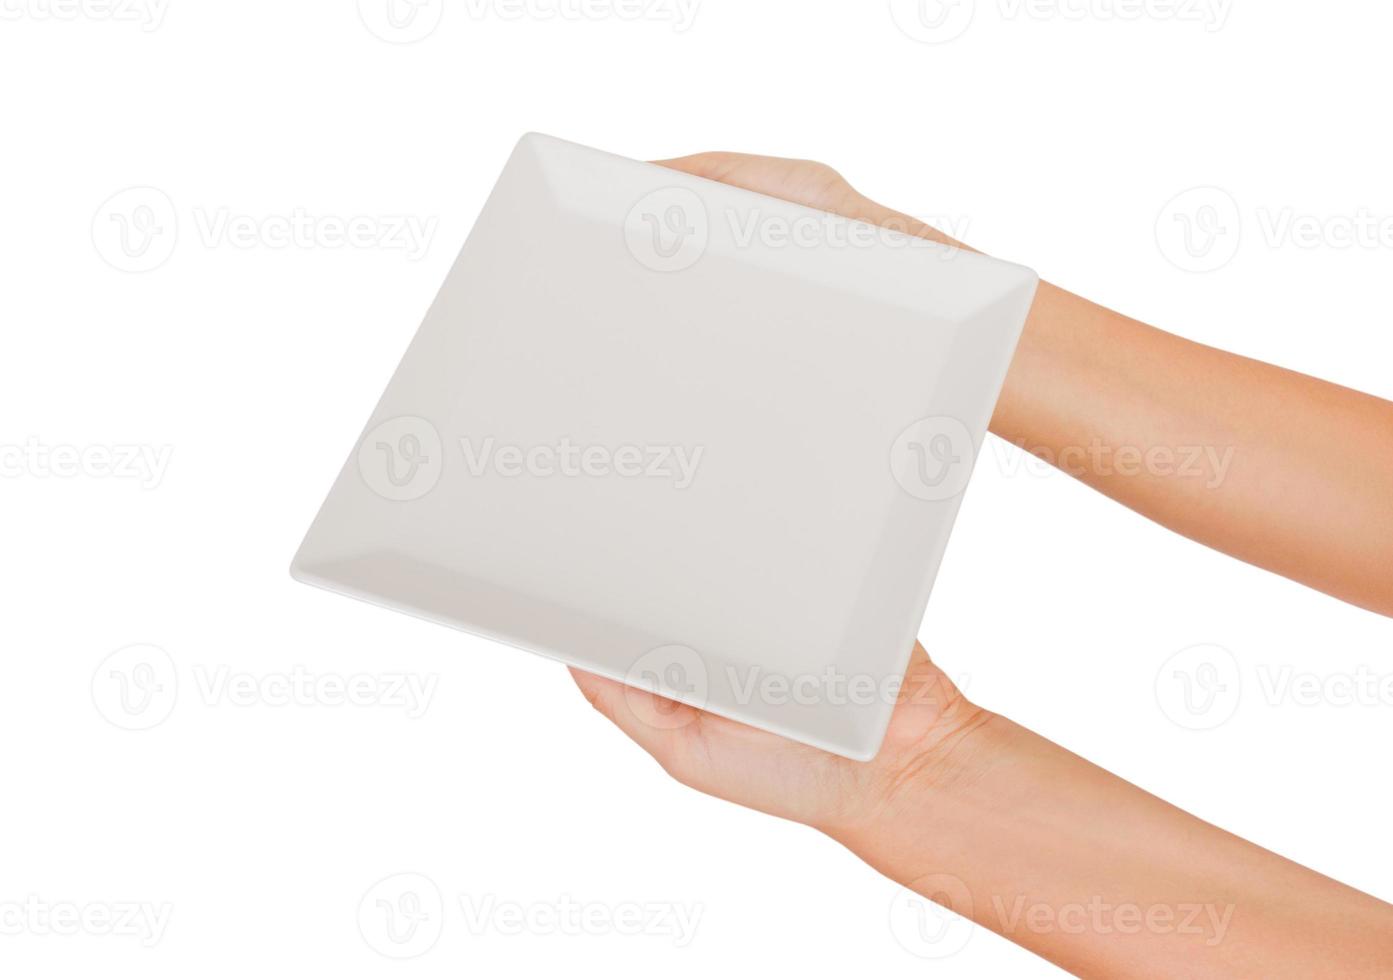 placa mate cuadrada blanca en blanco en mano femenina. vista en perspectiva, aislada sobre fondo blanco foto